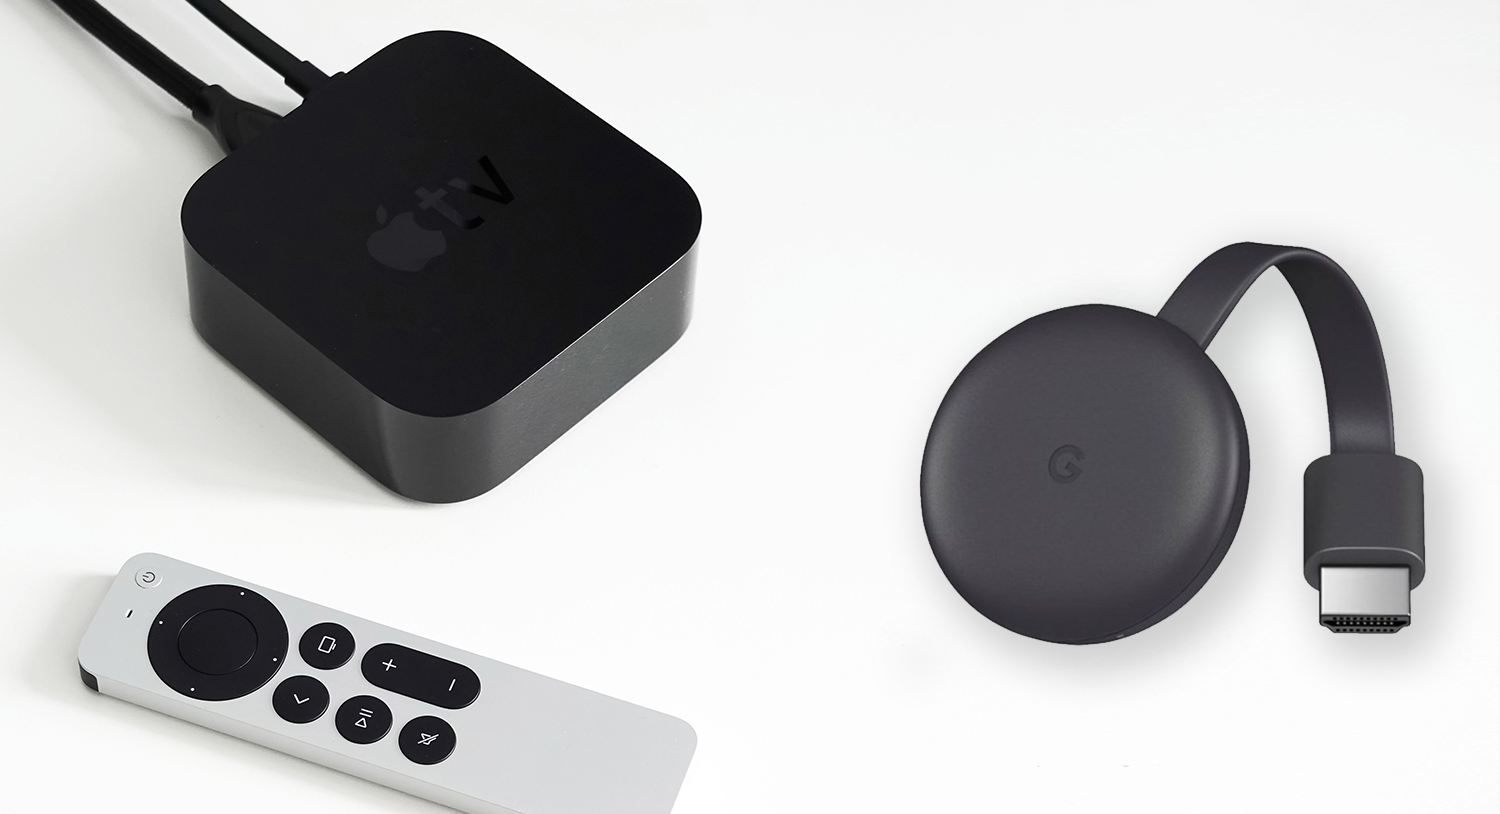 Razlike između Google Chromecast i Apple TV uređaja